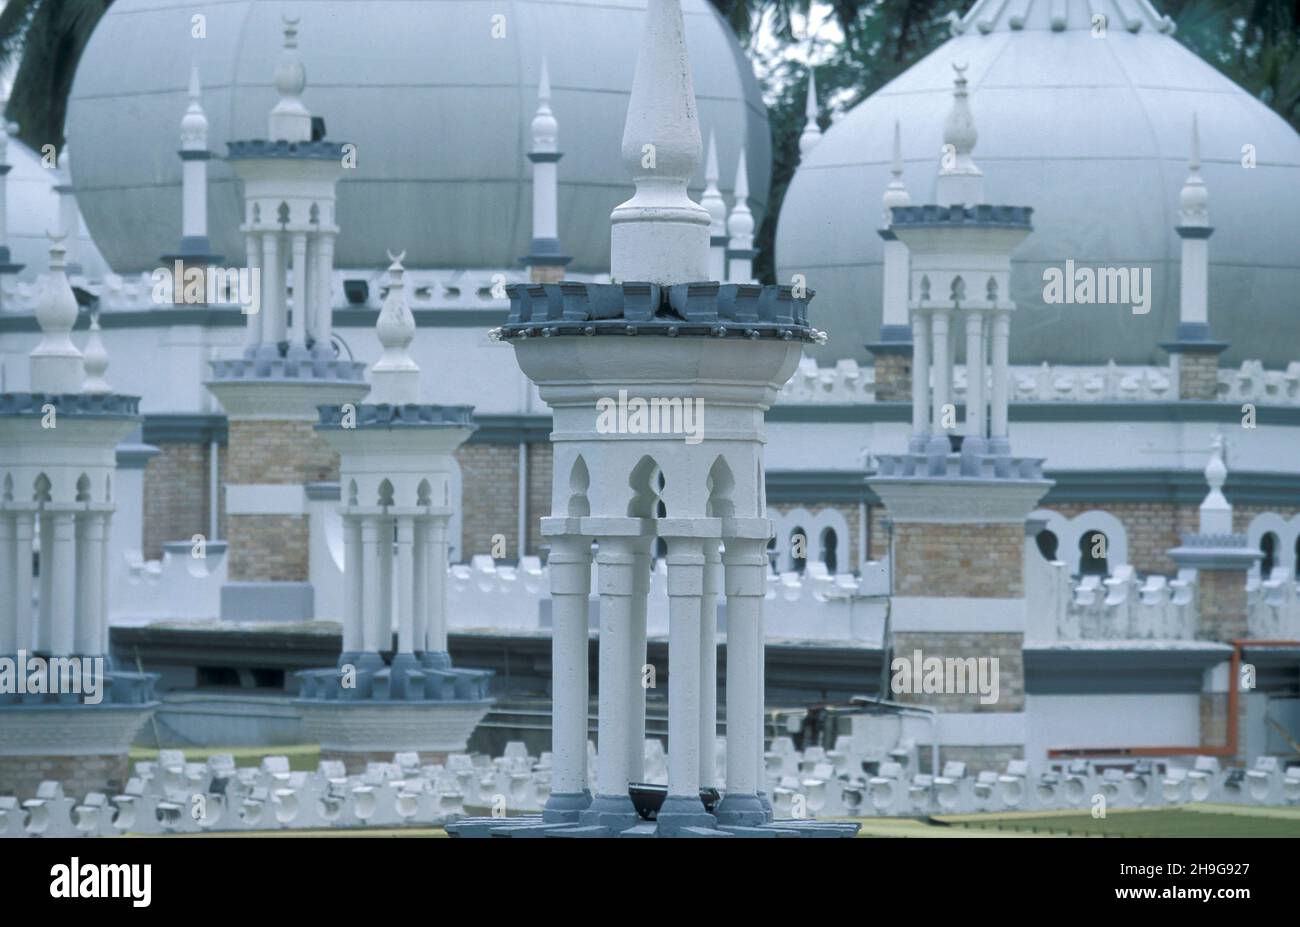 La mosquée de Masjid Jamek dans la ville de Kuala Lumpur en Malaisie.Malaisie, Kuala Lumpur, août 1997 Banque D'Images